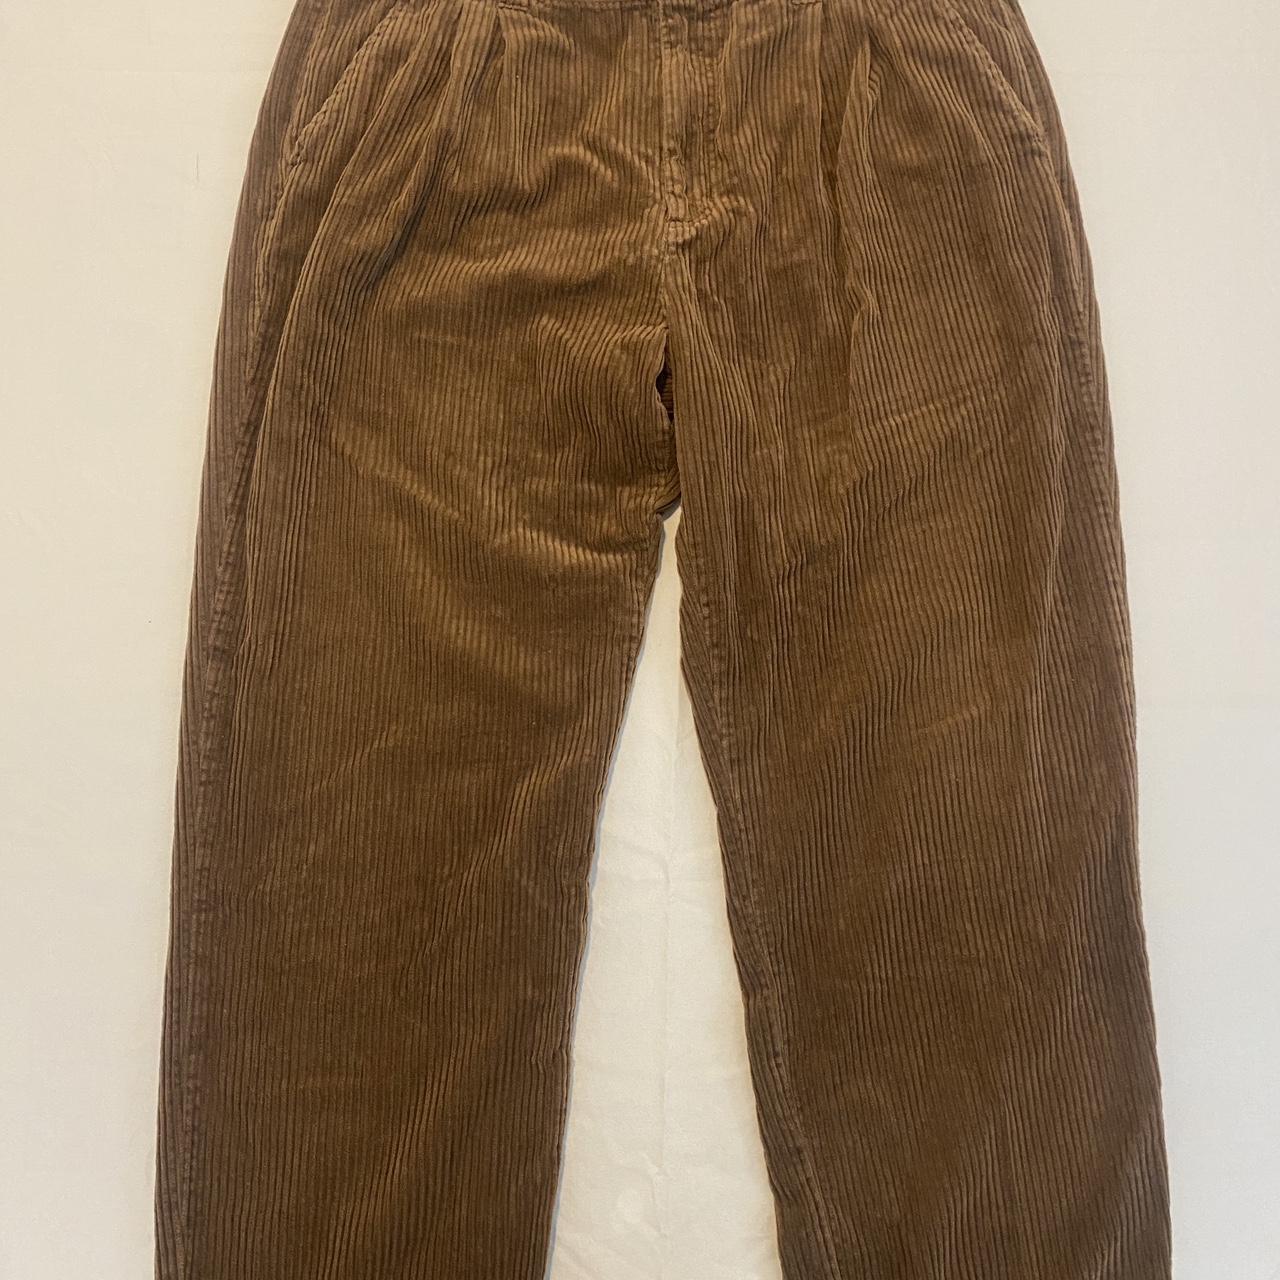 PJ Harlow Men's Brown Trousers